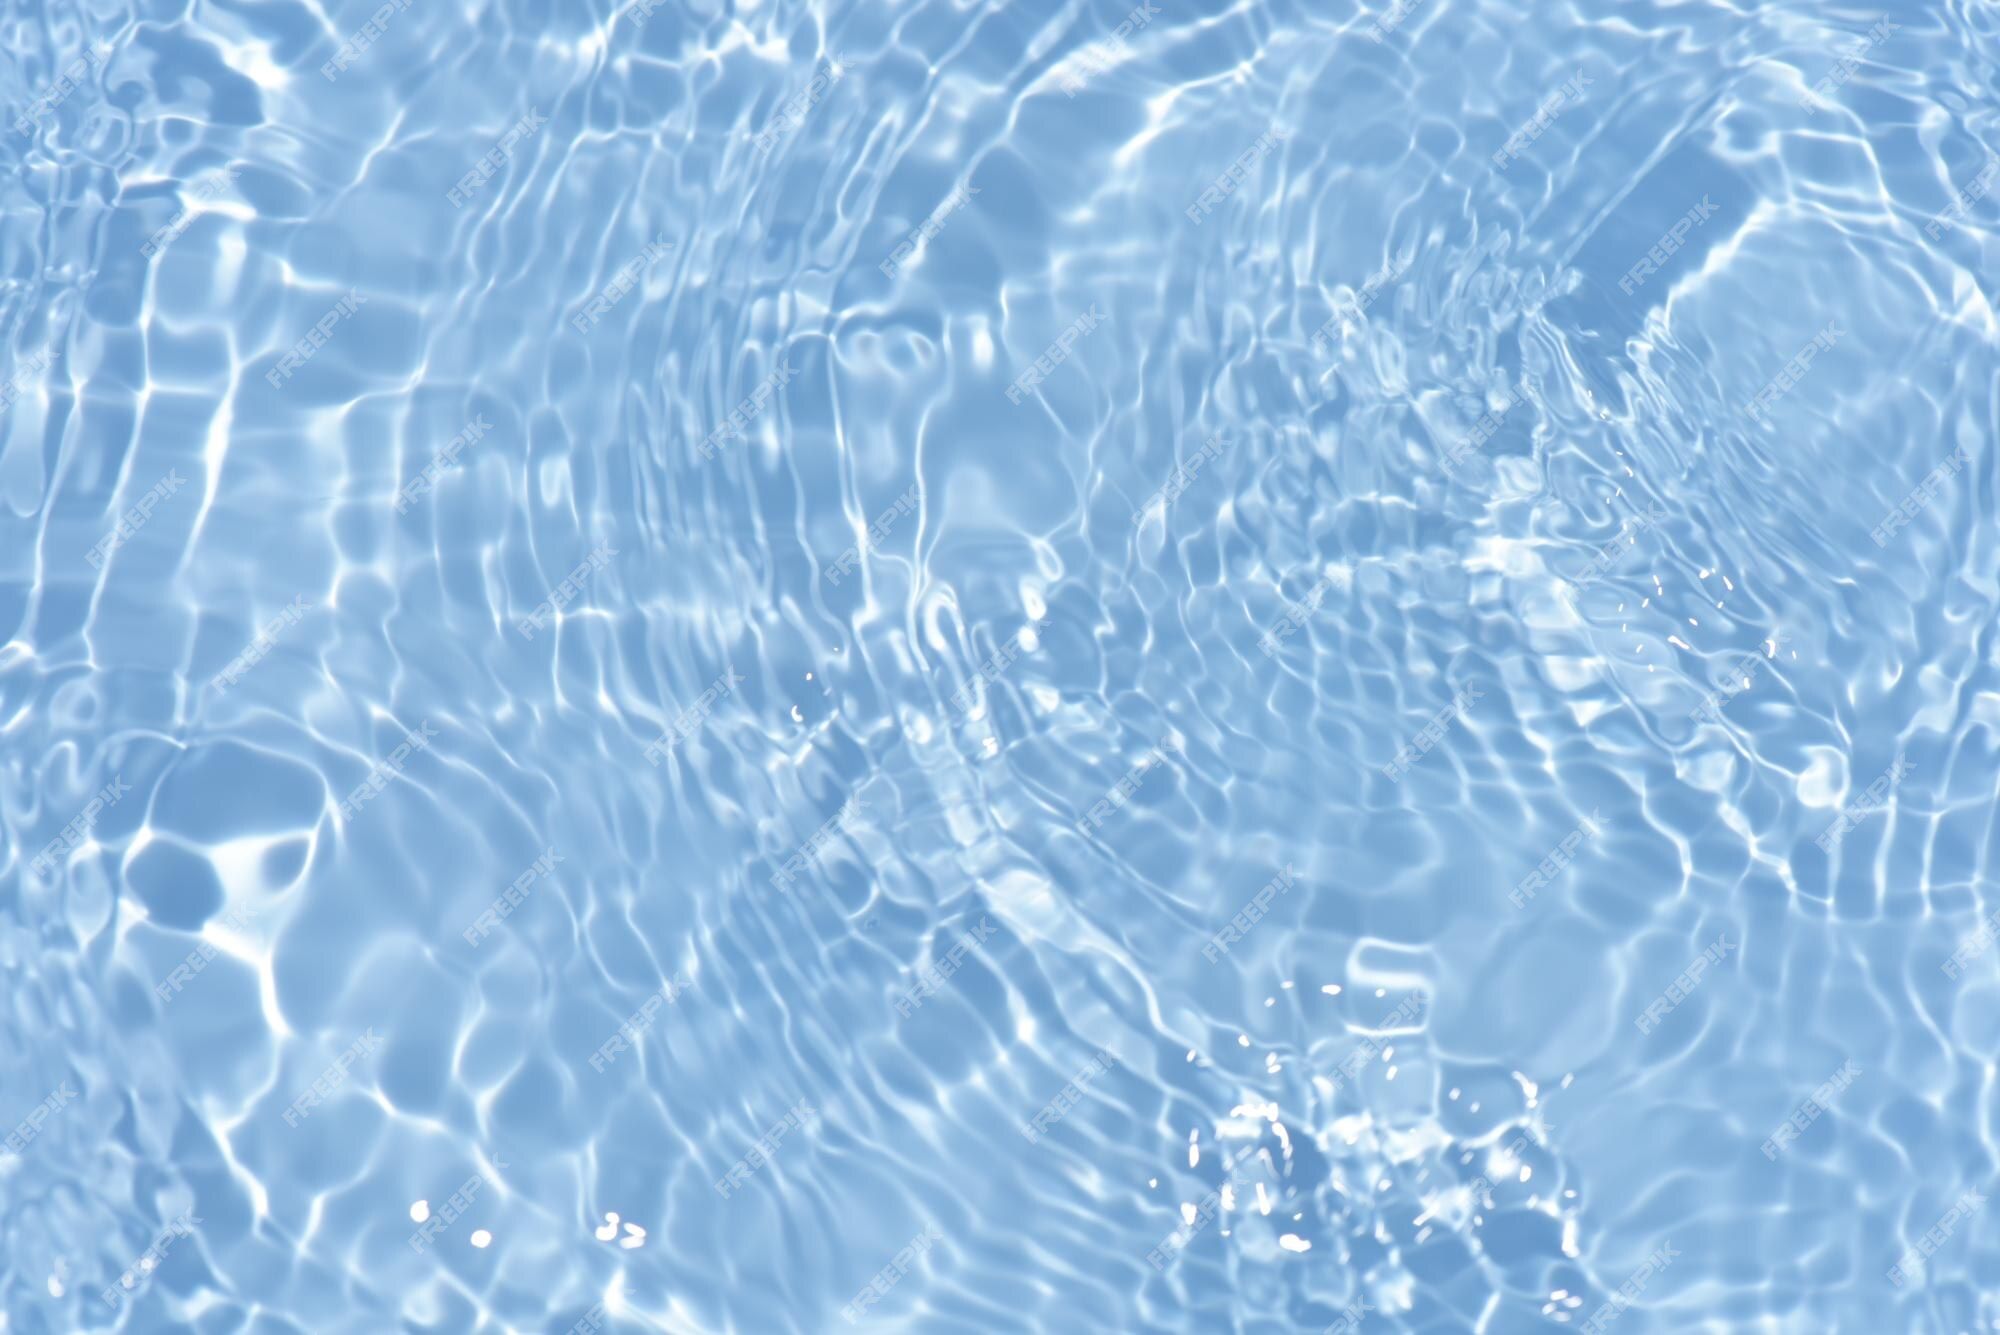  Ruhiges Hintergrundbild 2000x1335. Blaues wasser mit wellen auf der oberfläche unscharfes, transparentes, blau gefärbtes, klares, ruhiges wasser